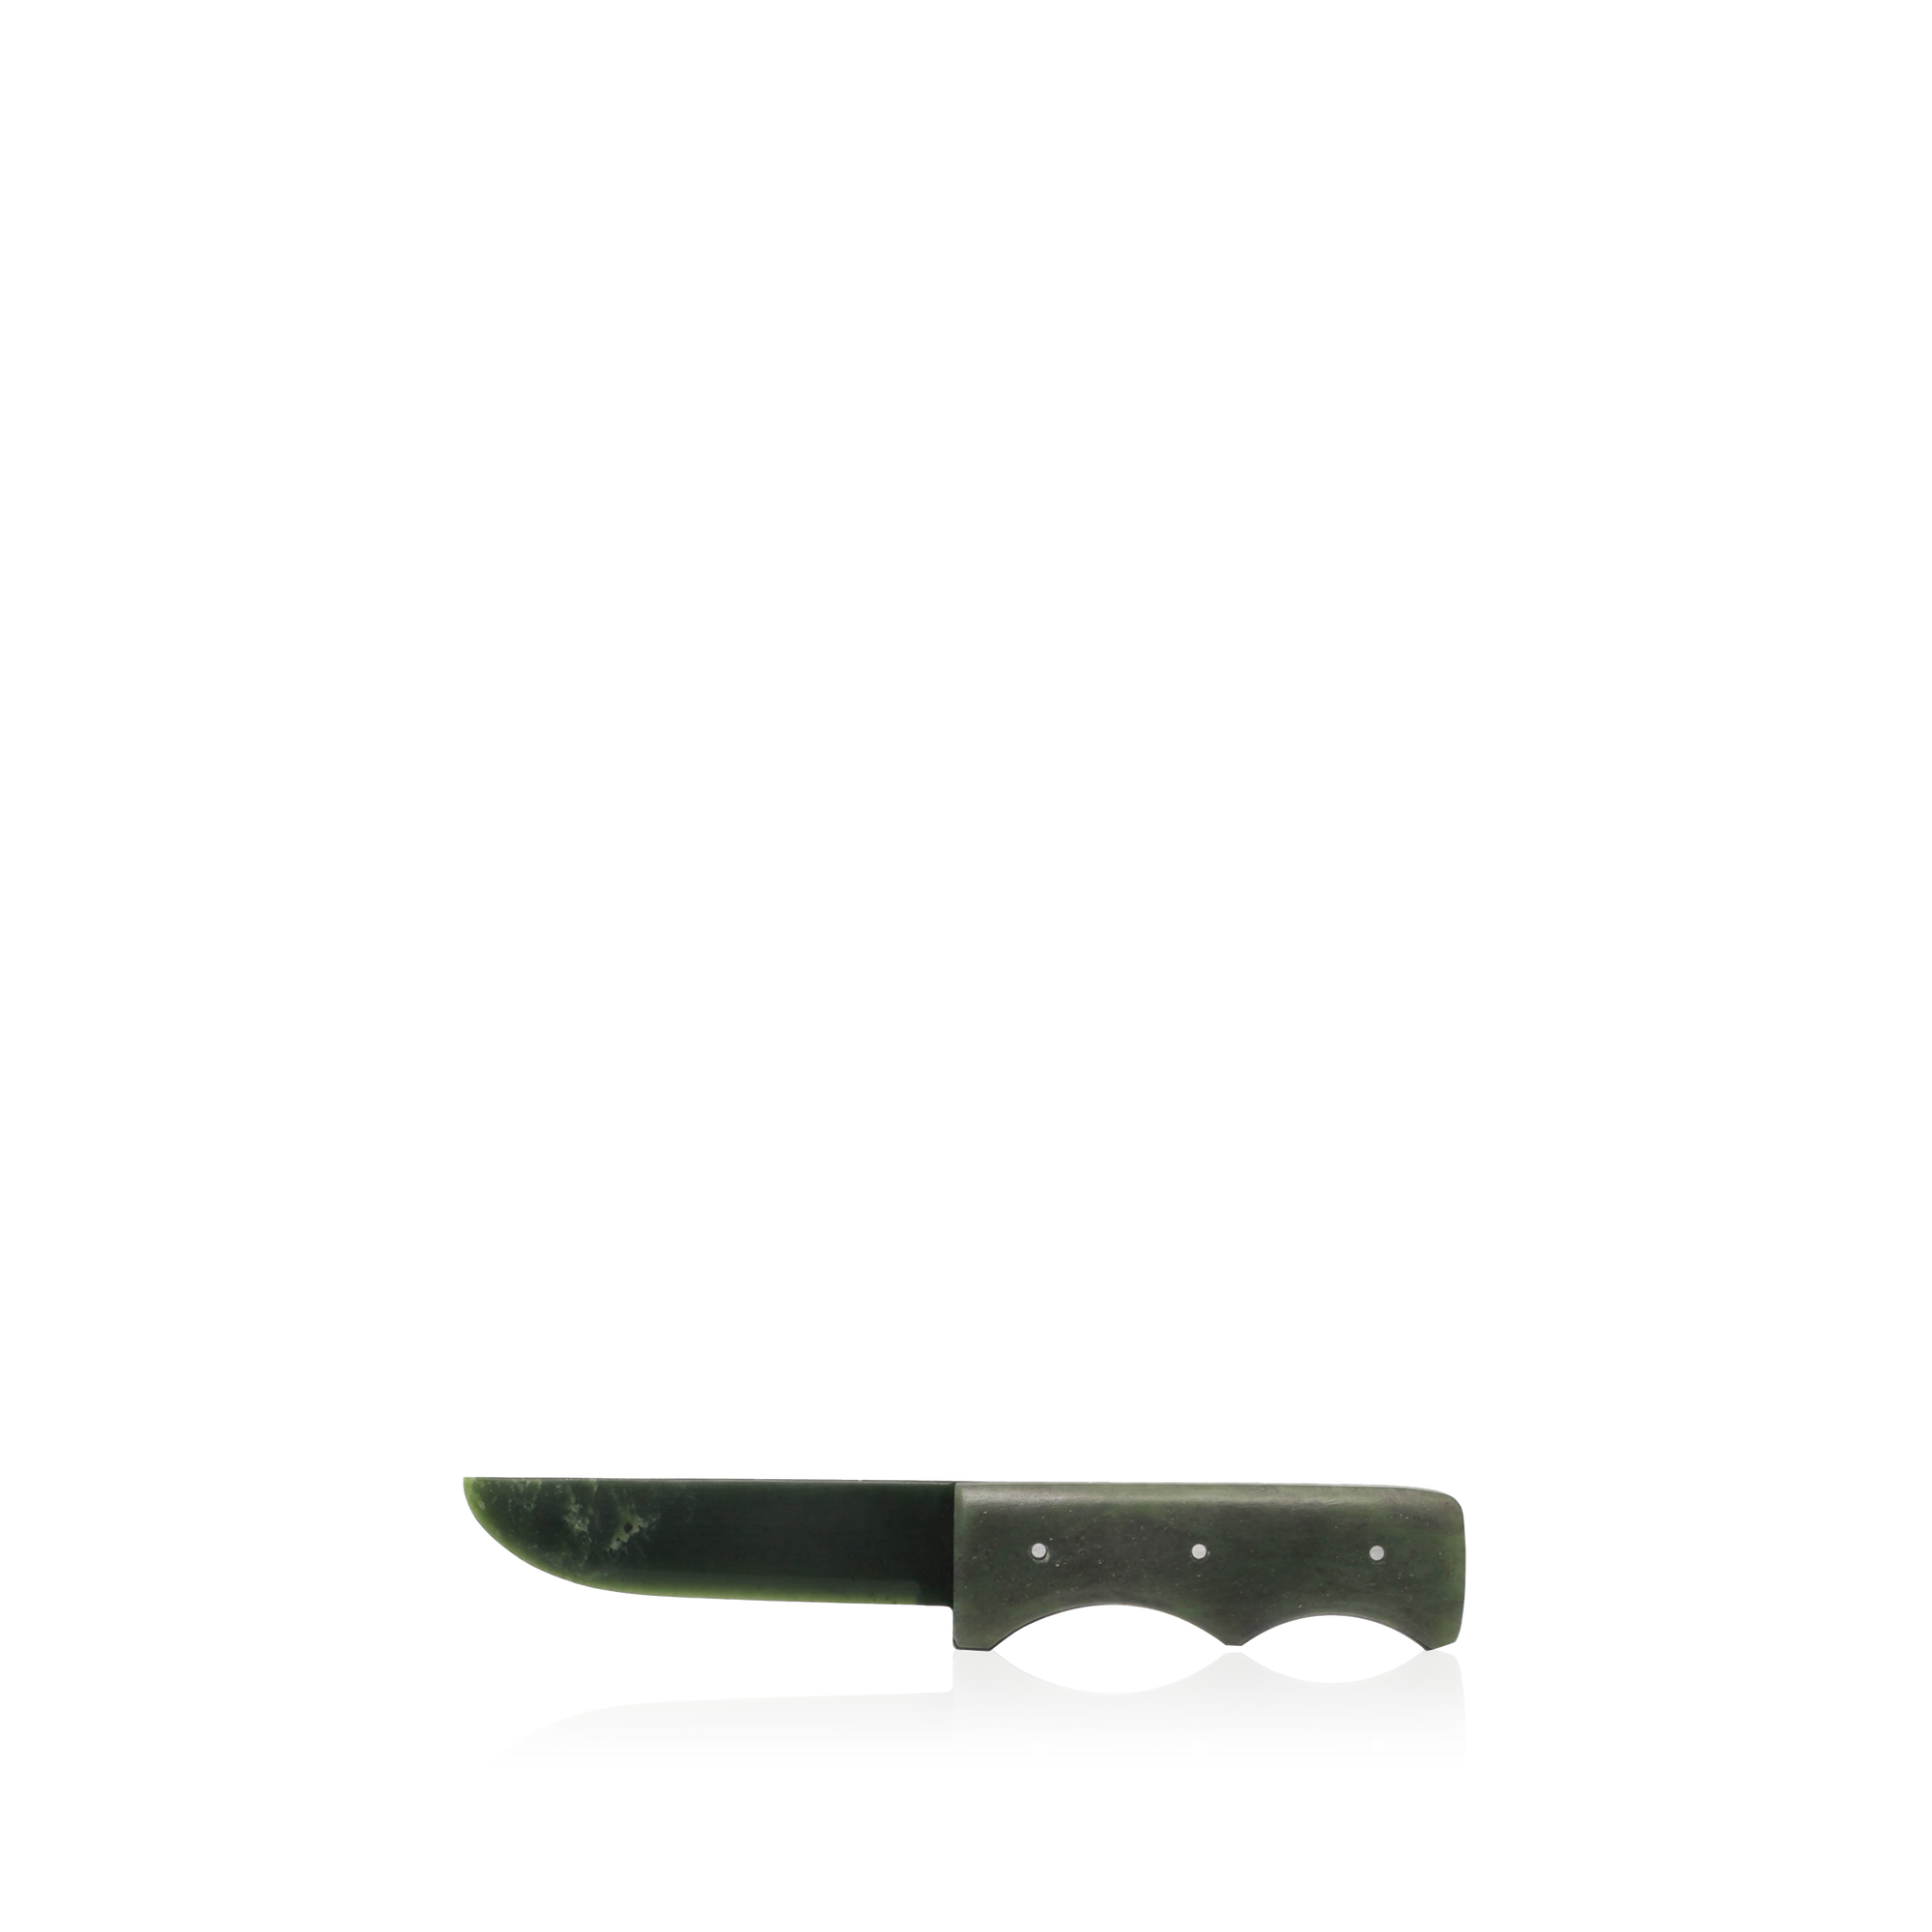 Product image for SKU DL-AKAKNIFESC1298P-1